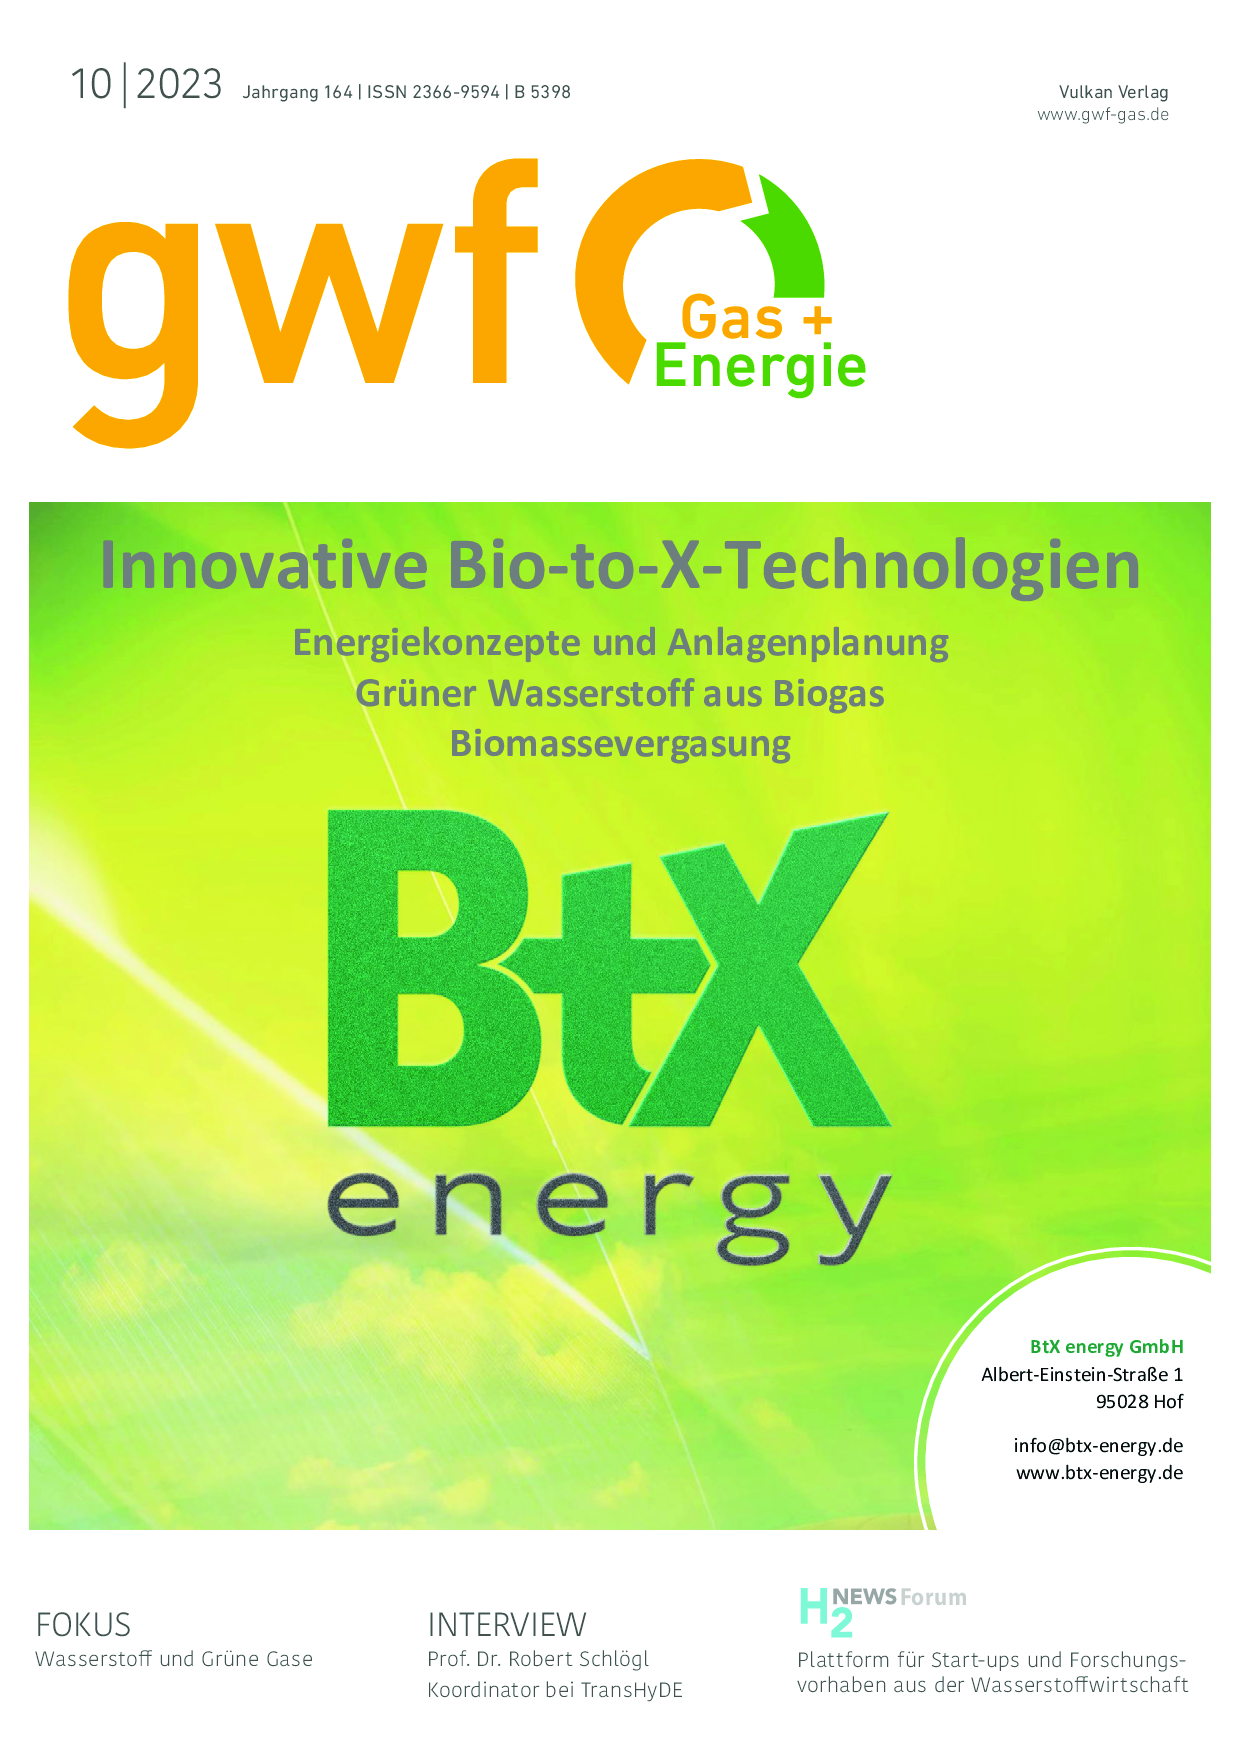 gwf Gas+Energie – 10 2023